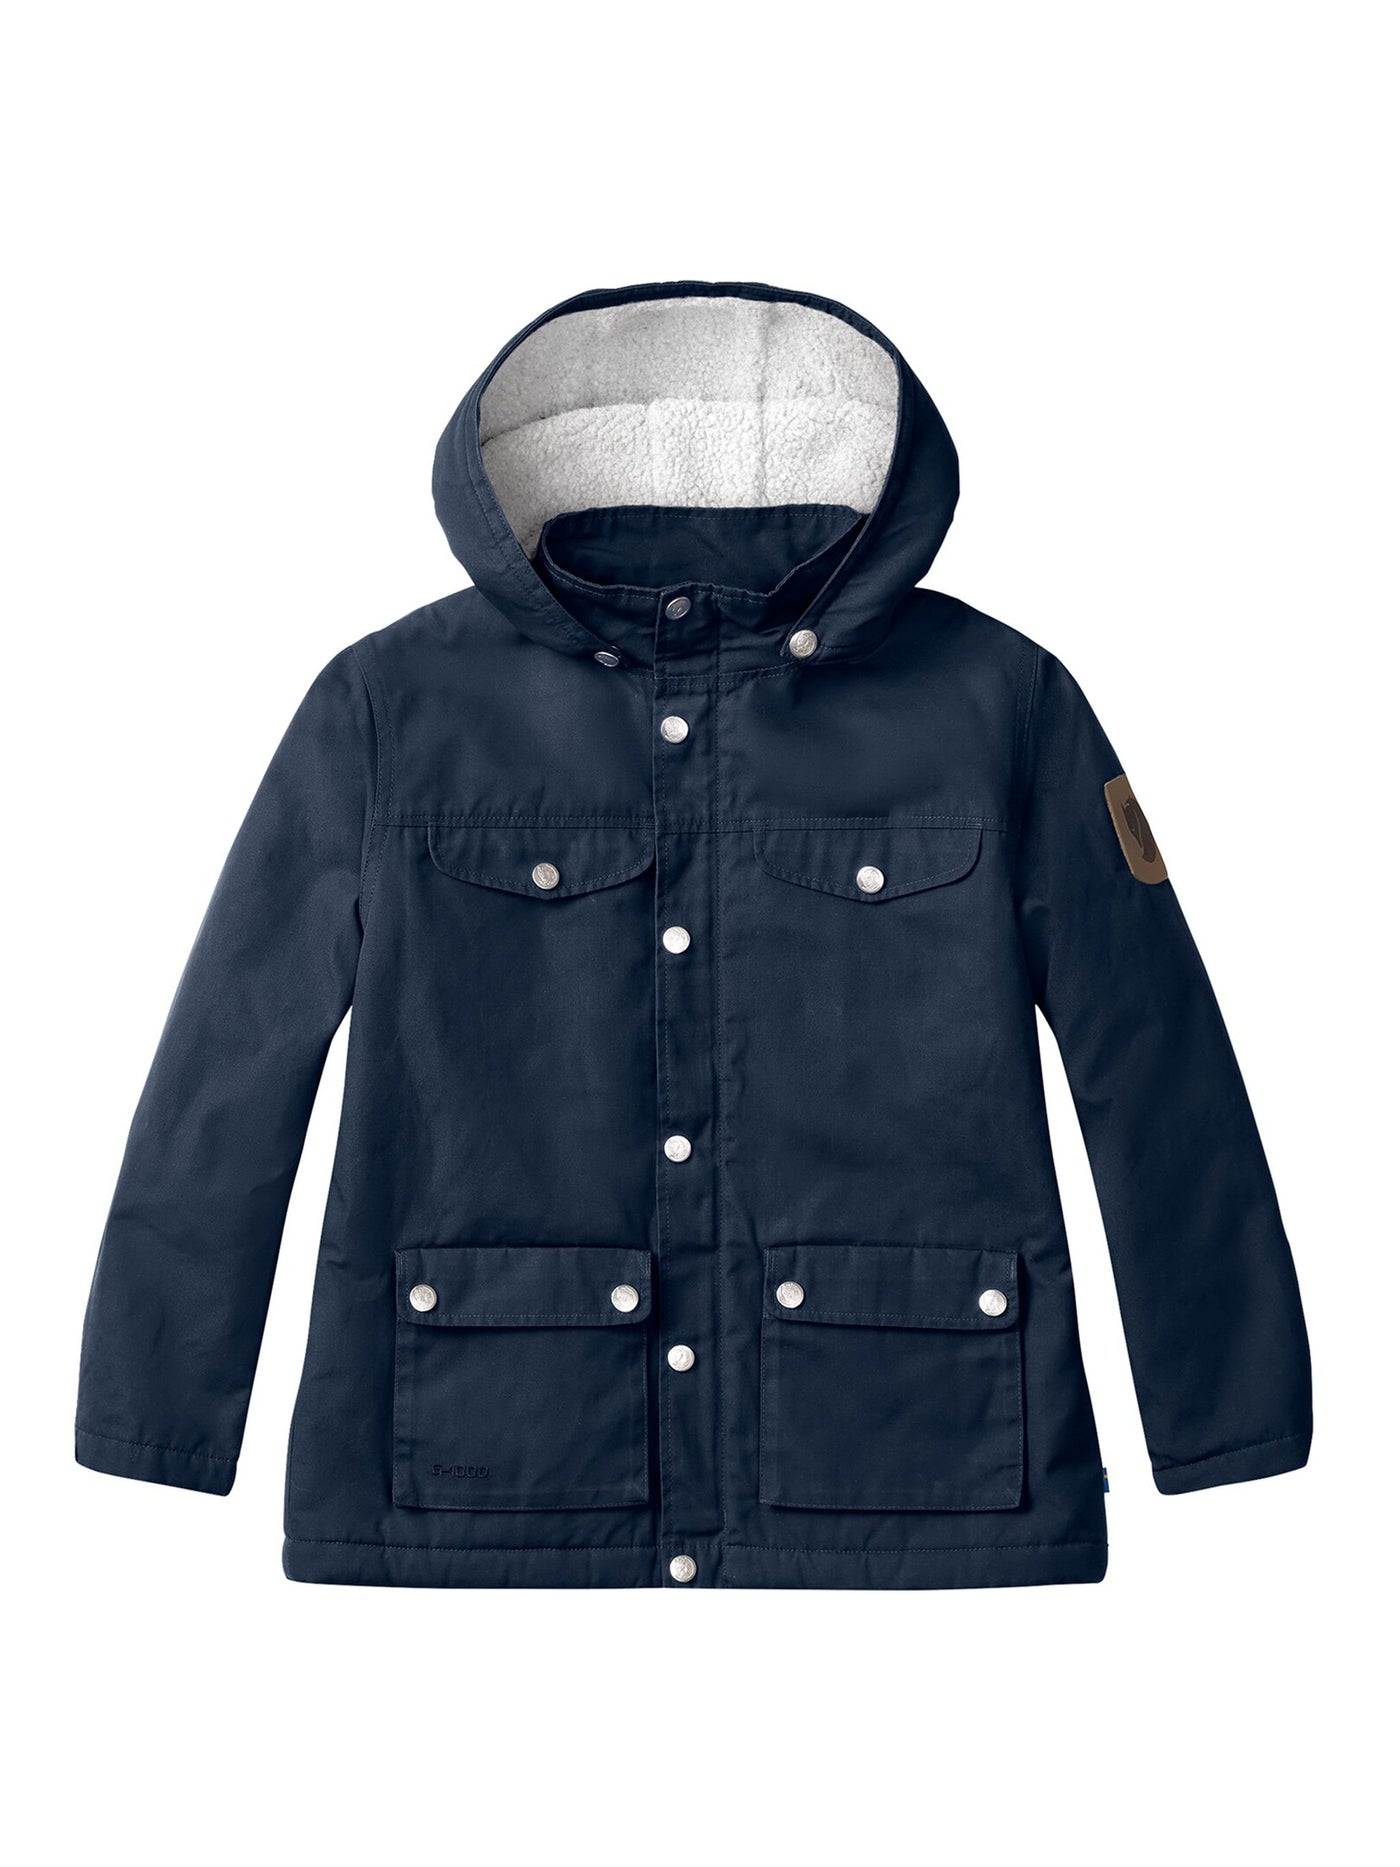 Kids Winter Greenland Jacket - Lasten ja nuorten talvitakki